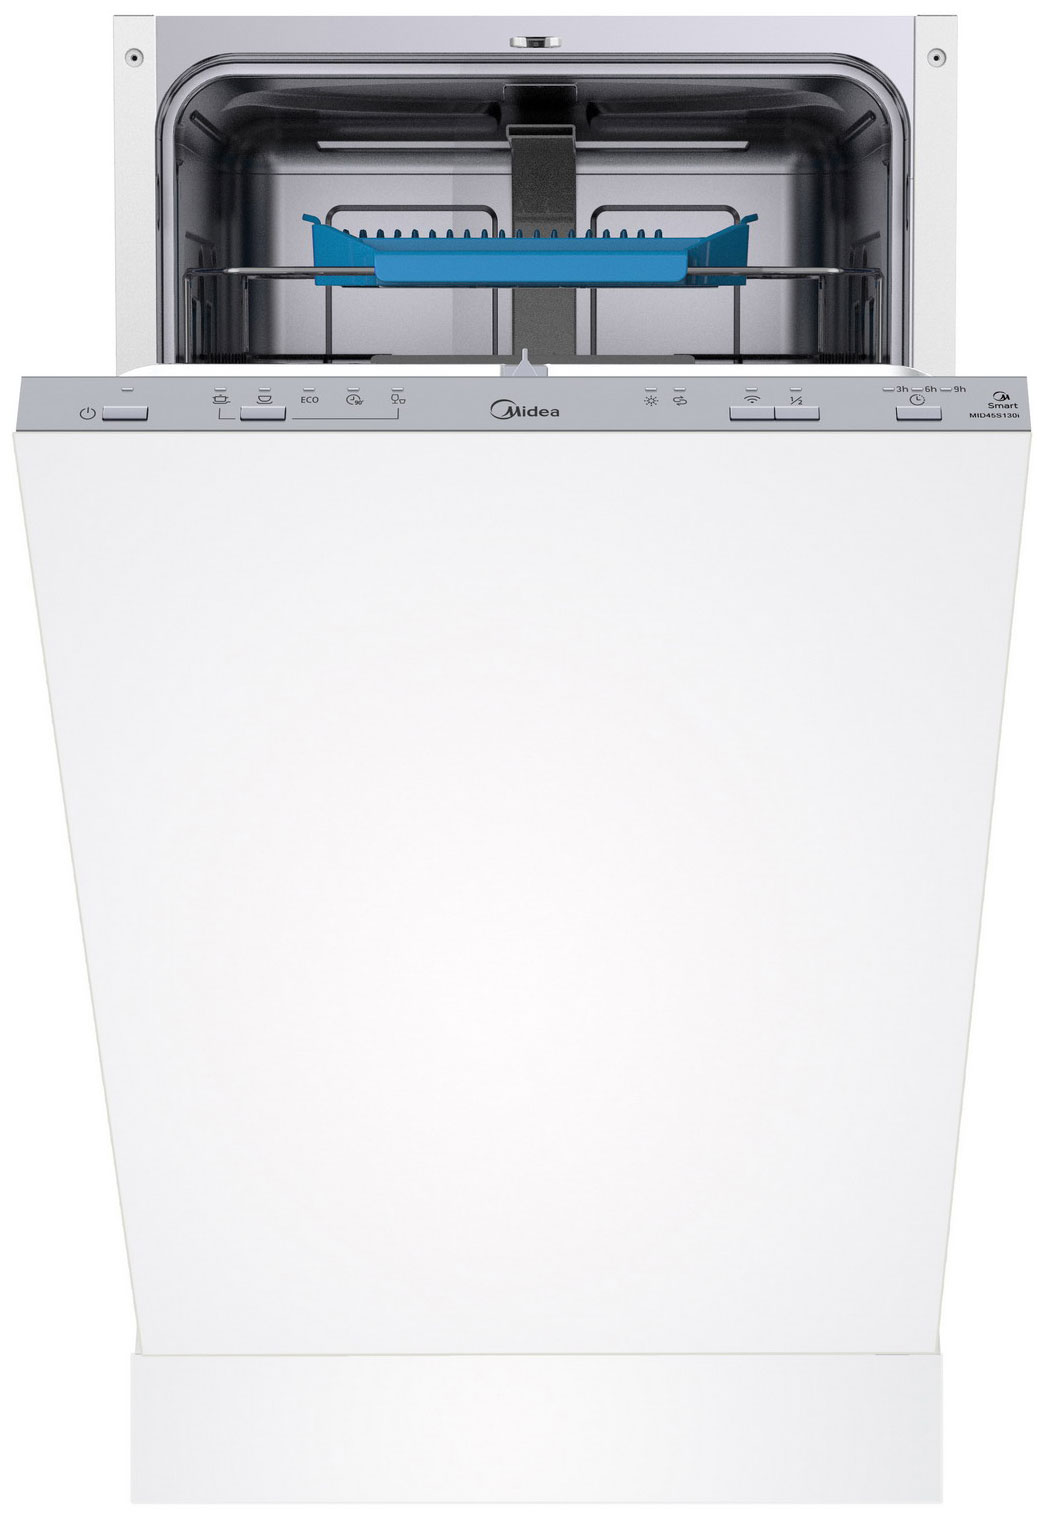 Встраиваемая посудомоечная машина Midea MID45S130i встраиваемая посудомоечная машина midea mid60s140i